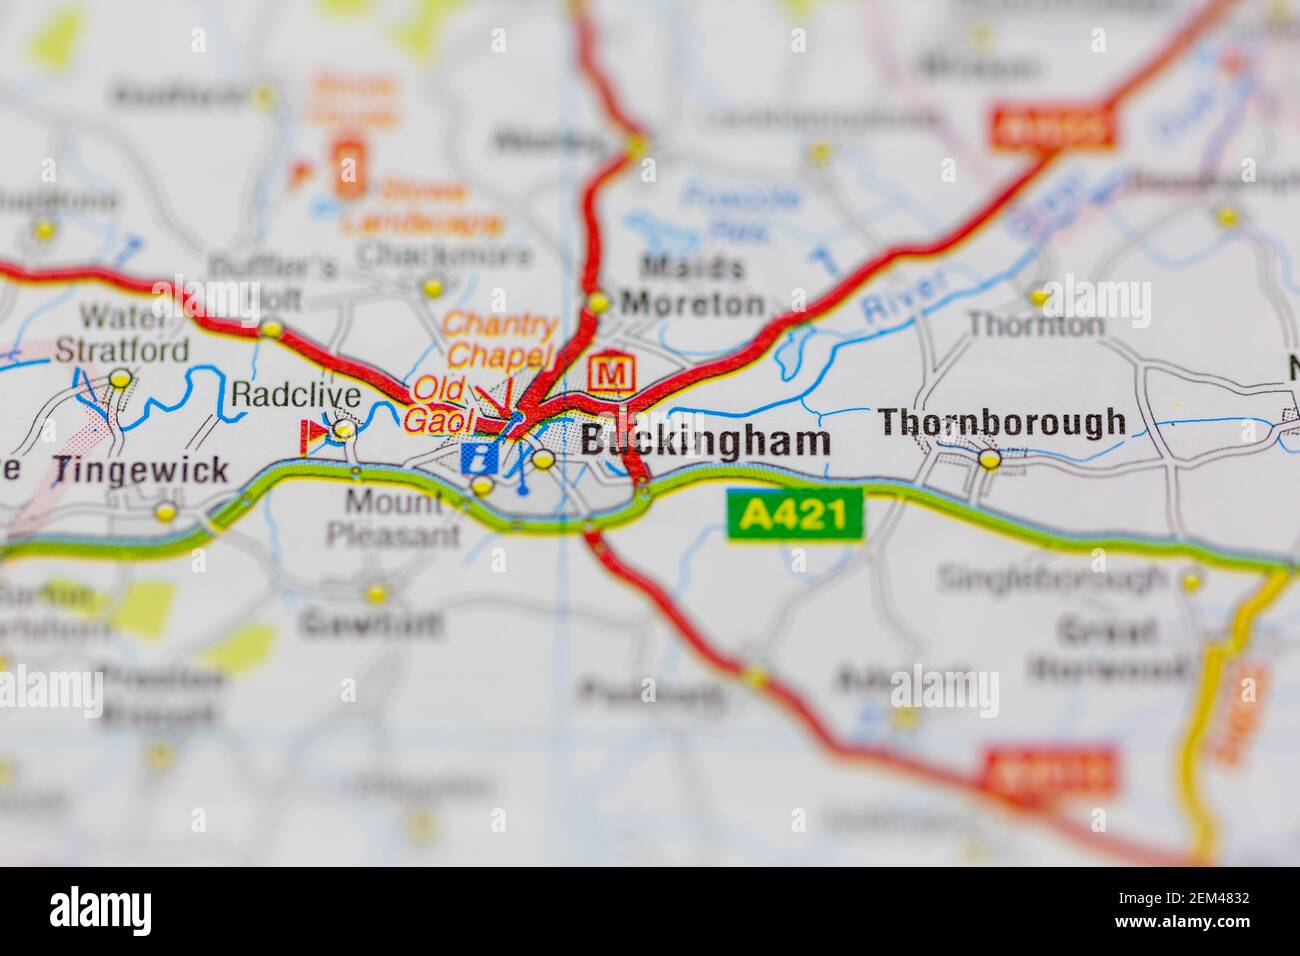 Buckingham sur une carte routière ou une carte géographique Banque D'Images